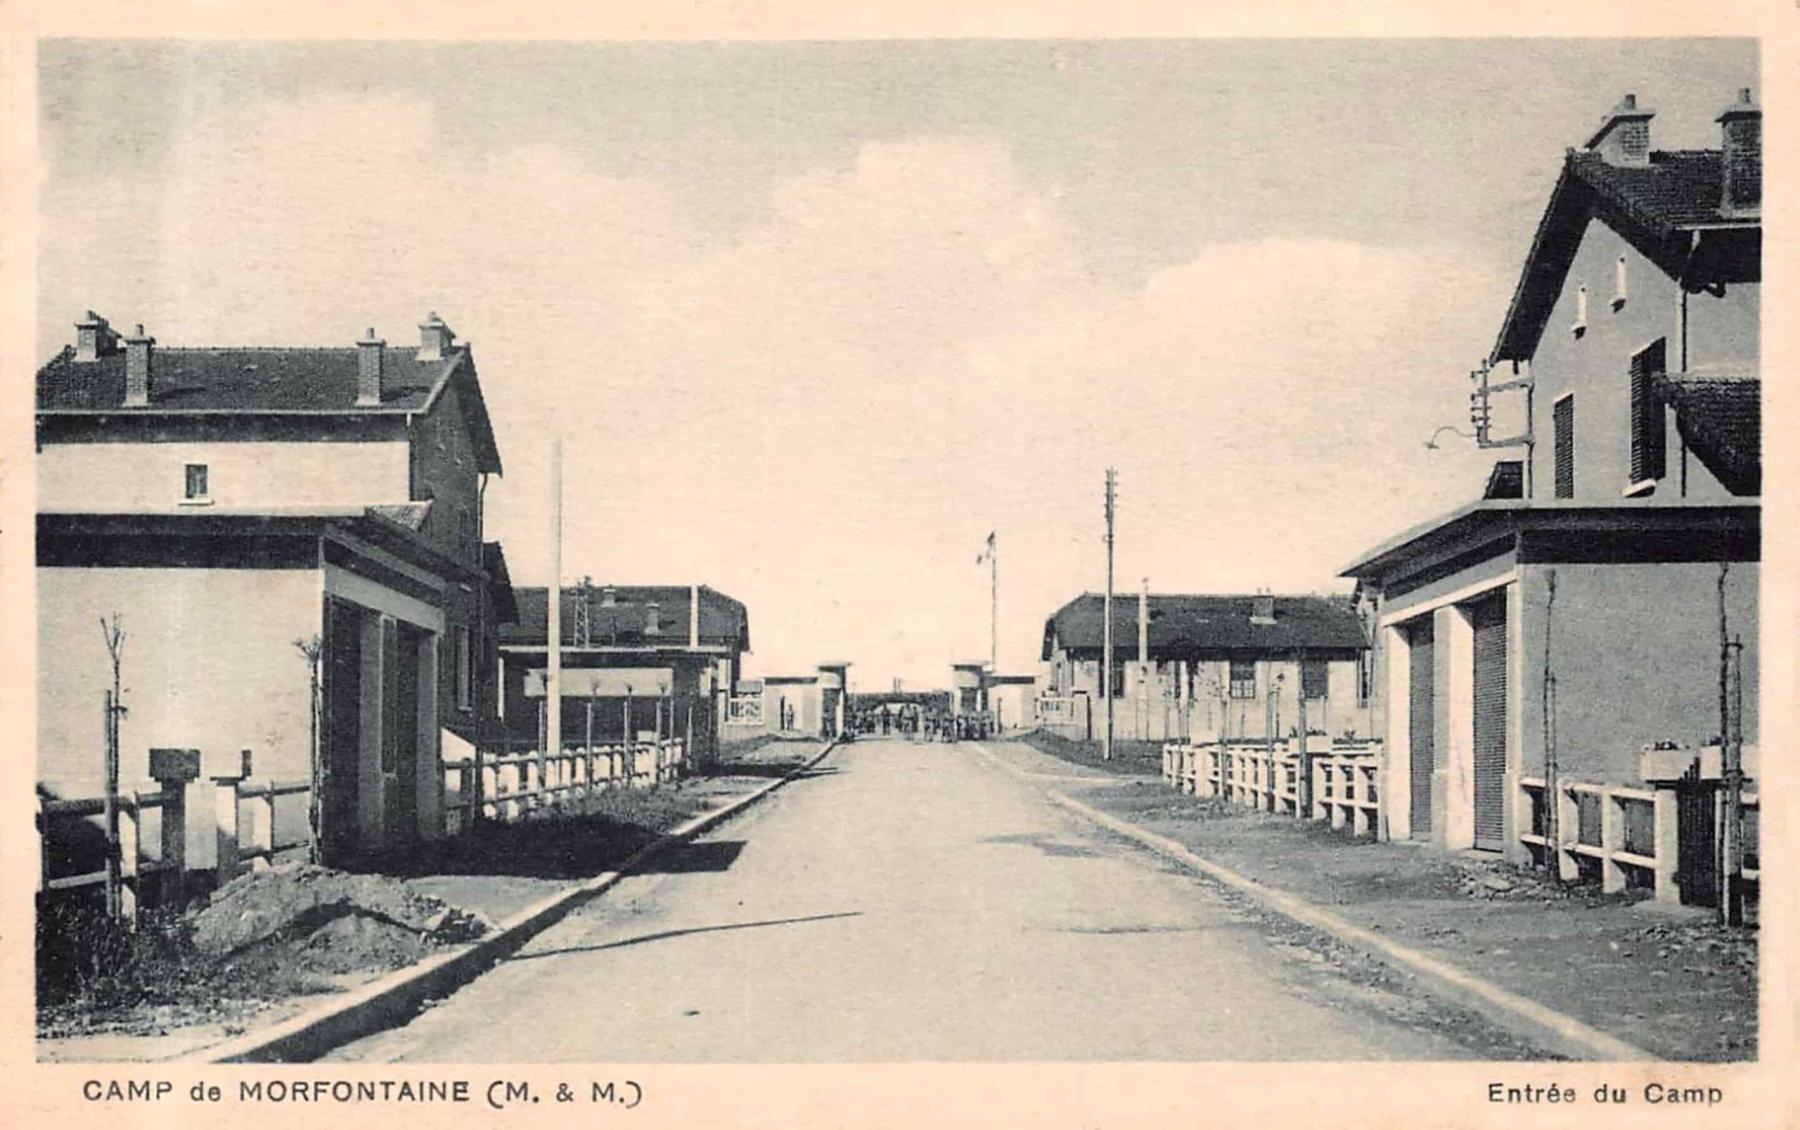 Ligne Maginot - MORFONTAINE - (Camp de sureté) - L'entrée du camp